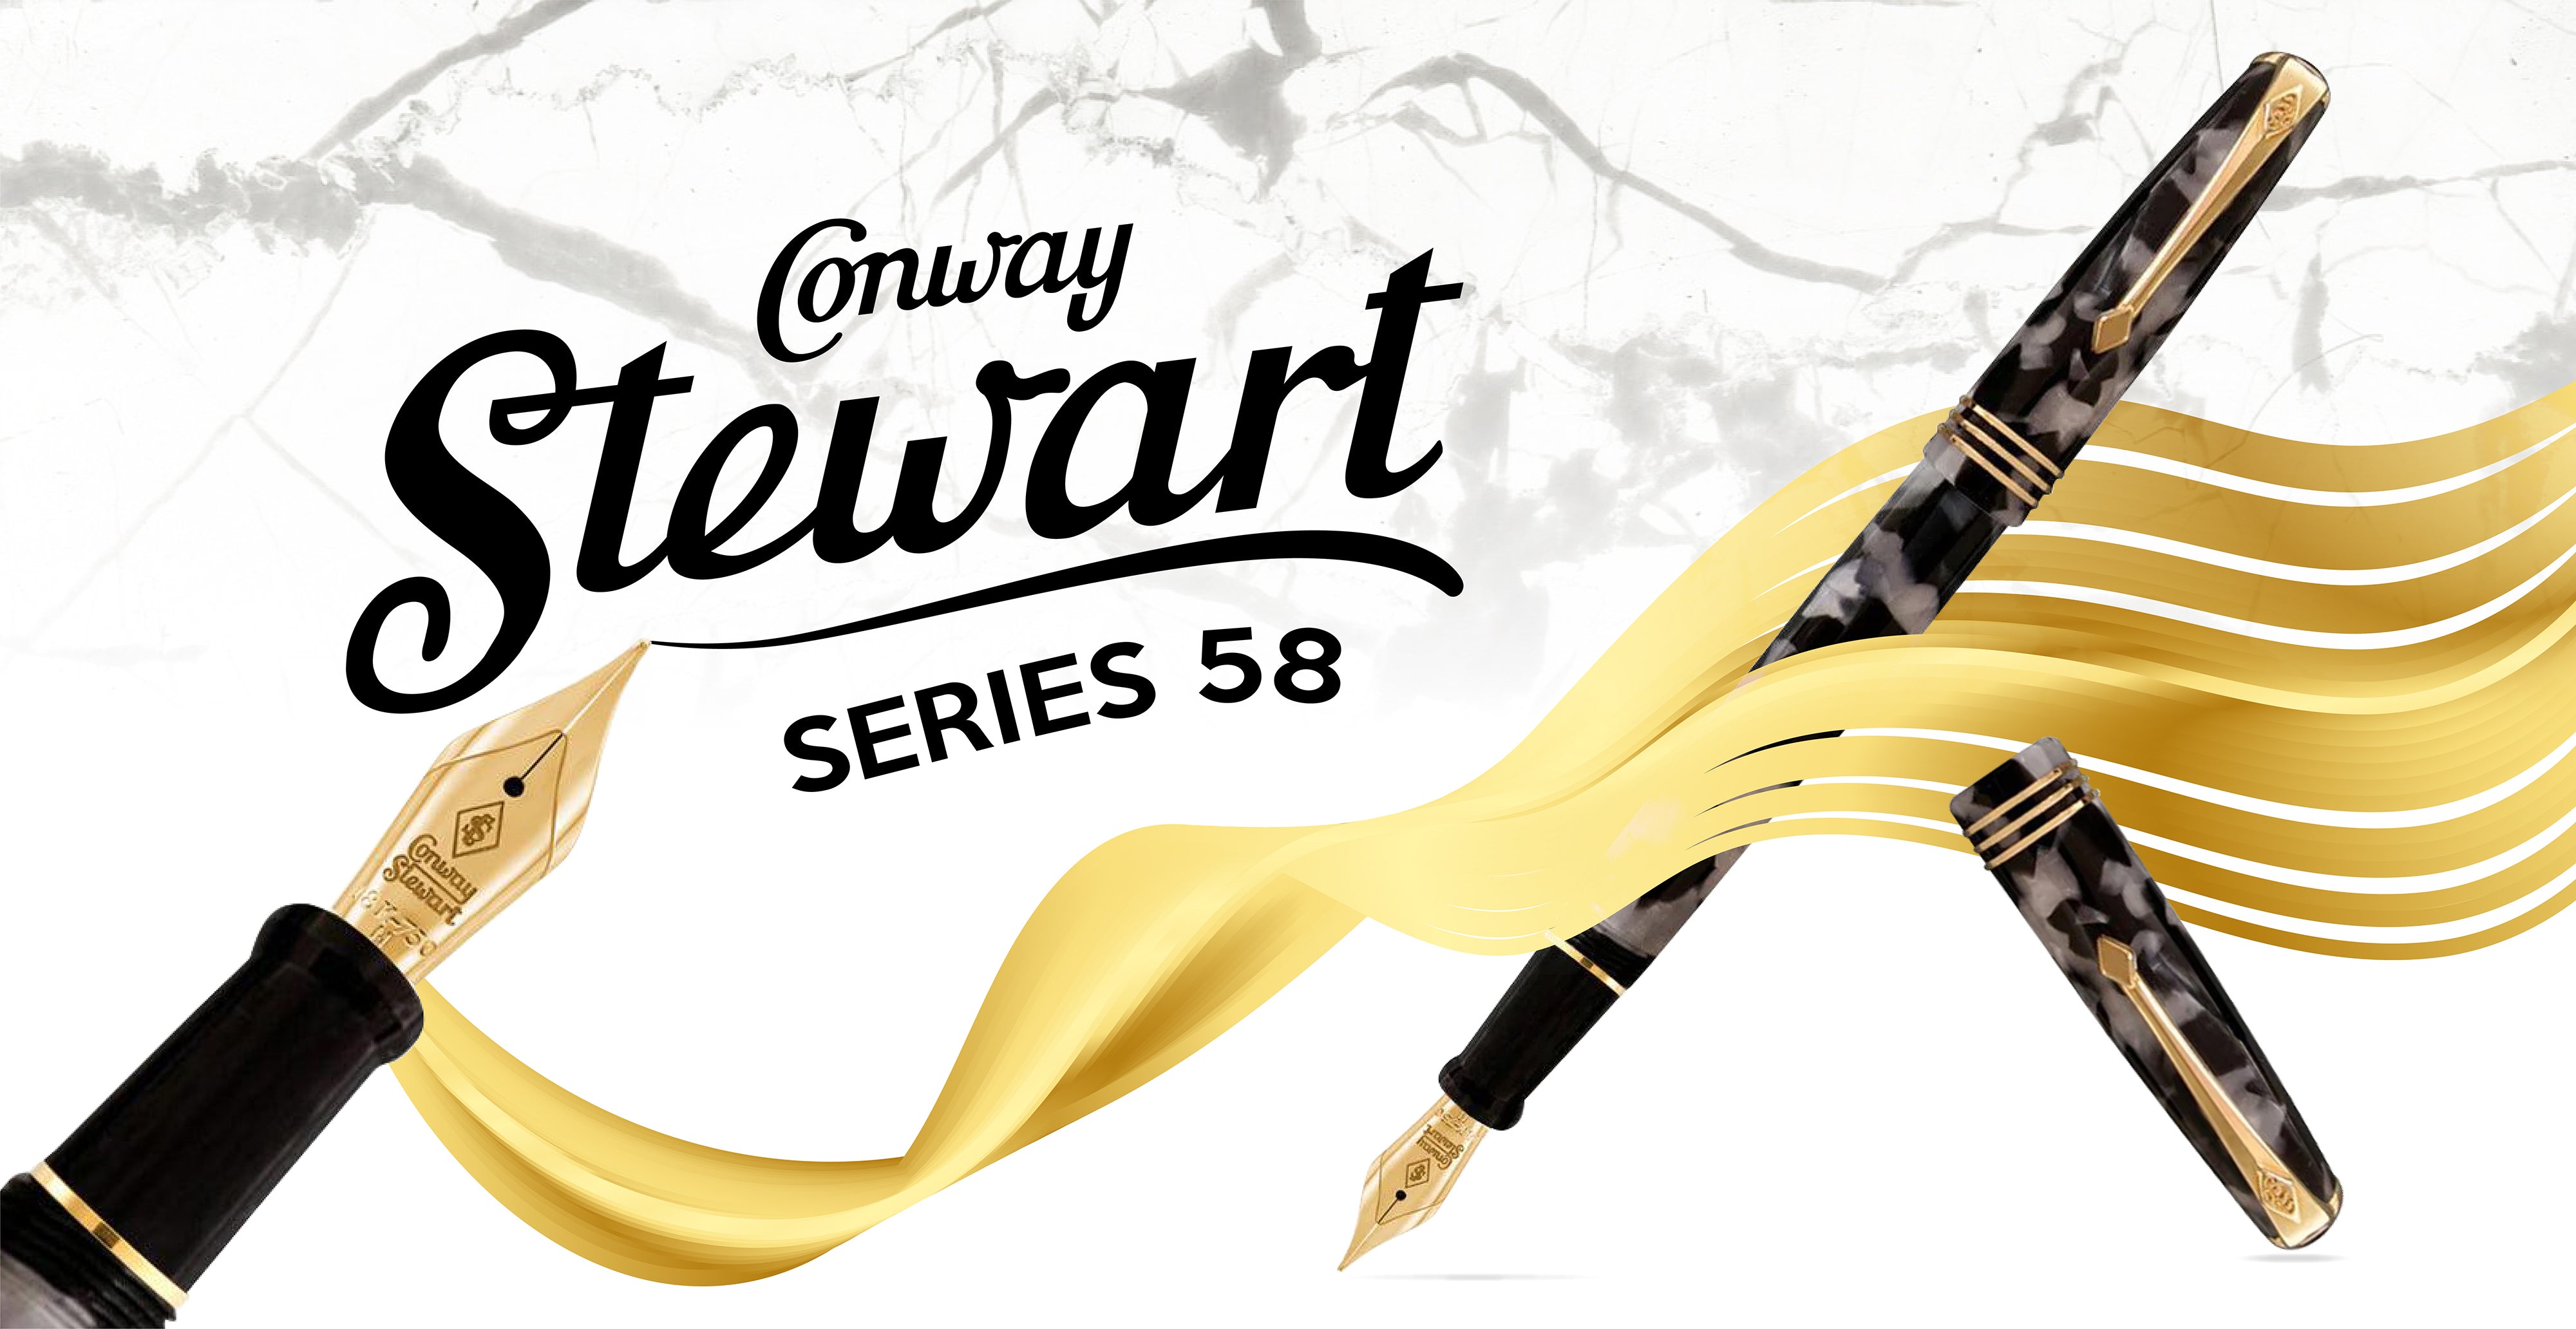 Brand Ambassador Aidan Bernal: A Review of the Conway Stewart Series 58 Fountain Pen